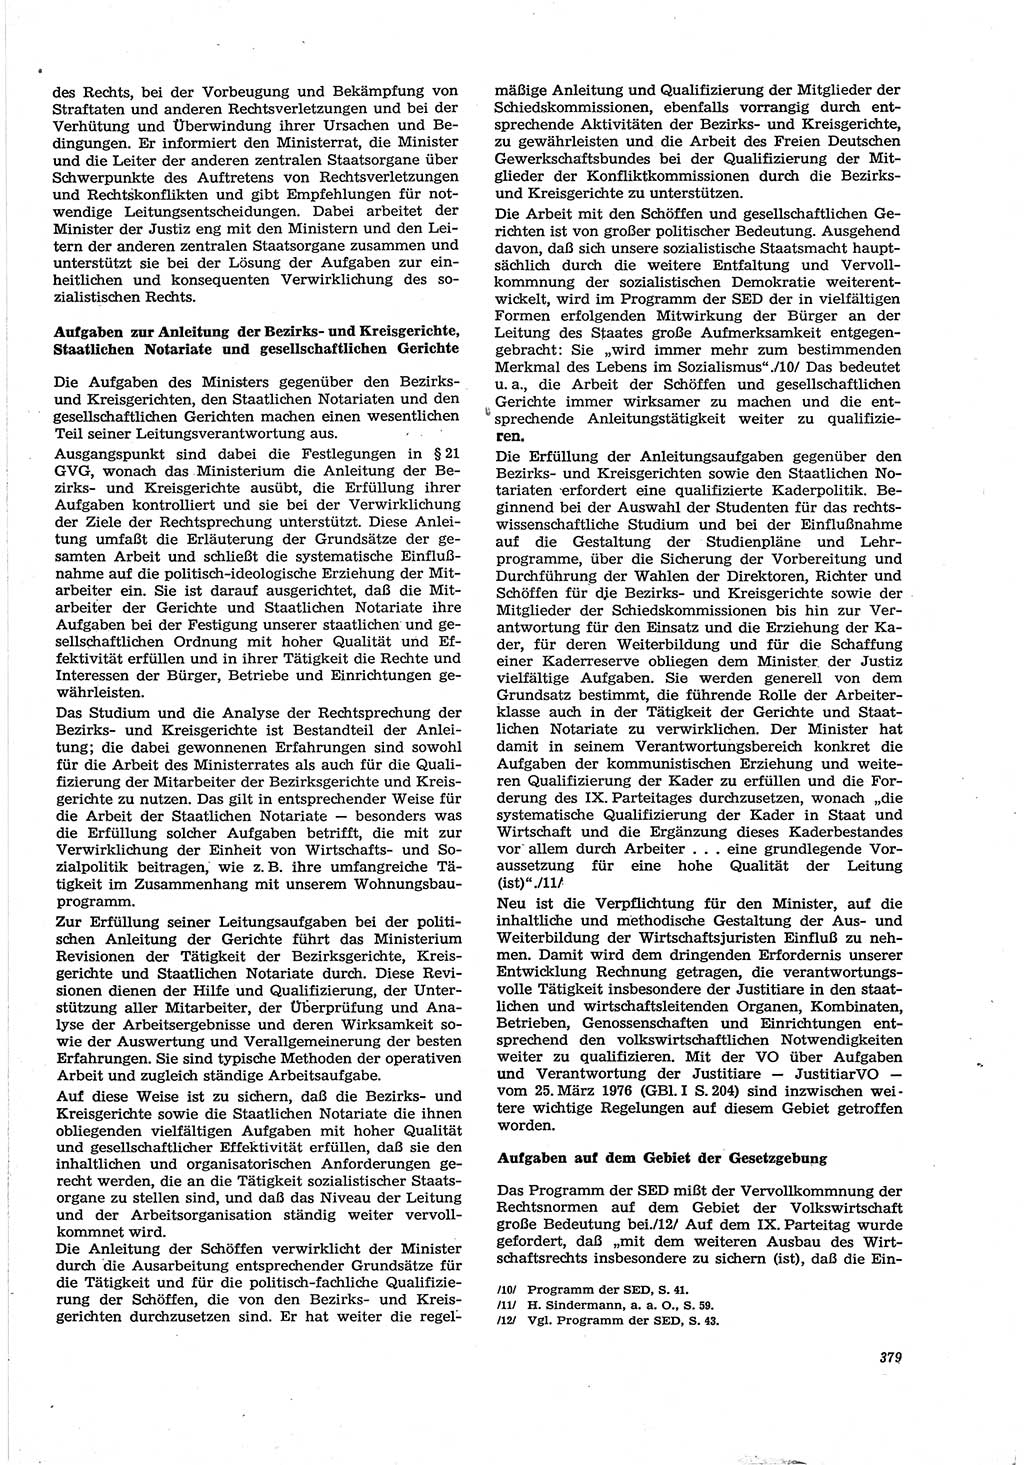 Neue Justiz (NJ), Zeitschrift für Recht und Rechtswissenschaft [Deutsche Demokratische Republik (DDR)], 30. Jahrgang 1976, Seite 379 (NJ DDR 1976, S. 379)